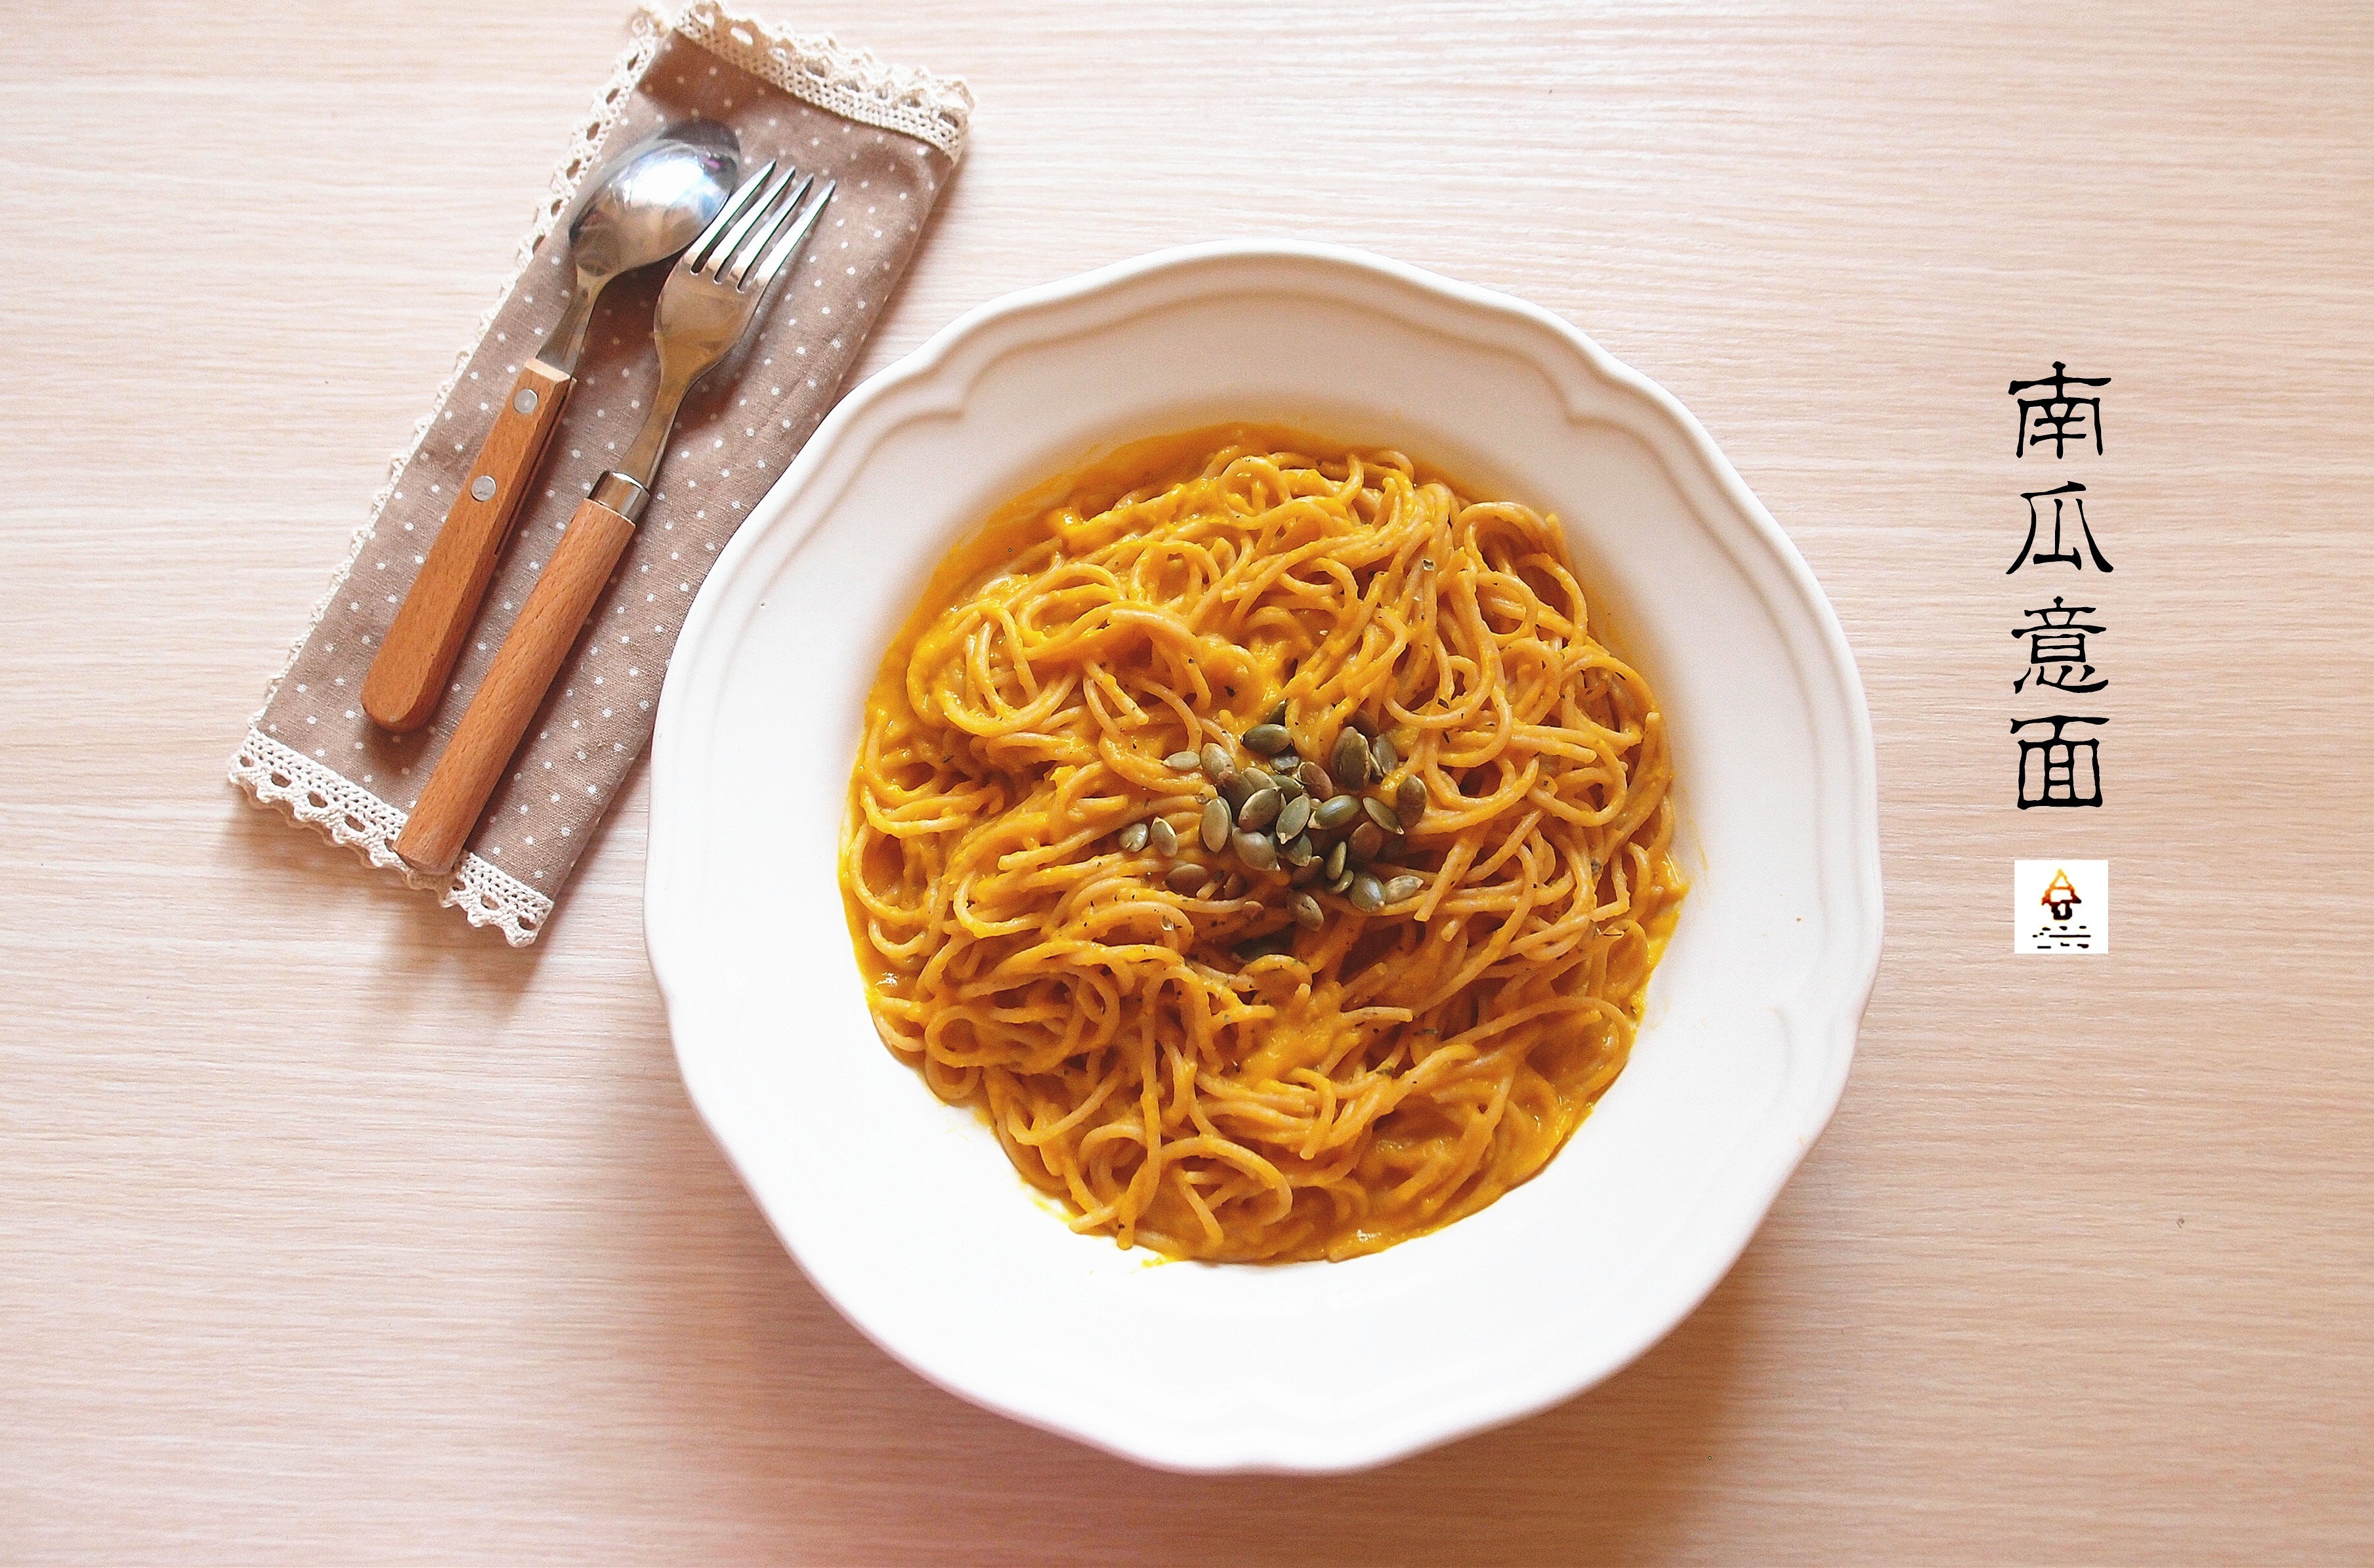 南瓜意面(Spaghetti with Pumpkin Sauce)的做法